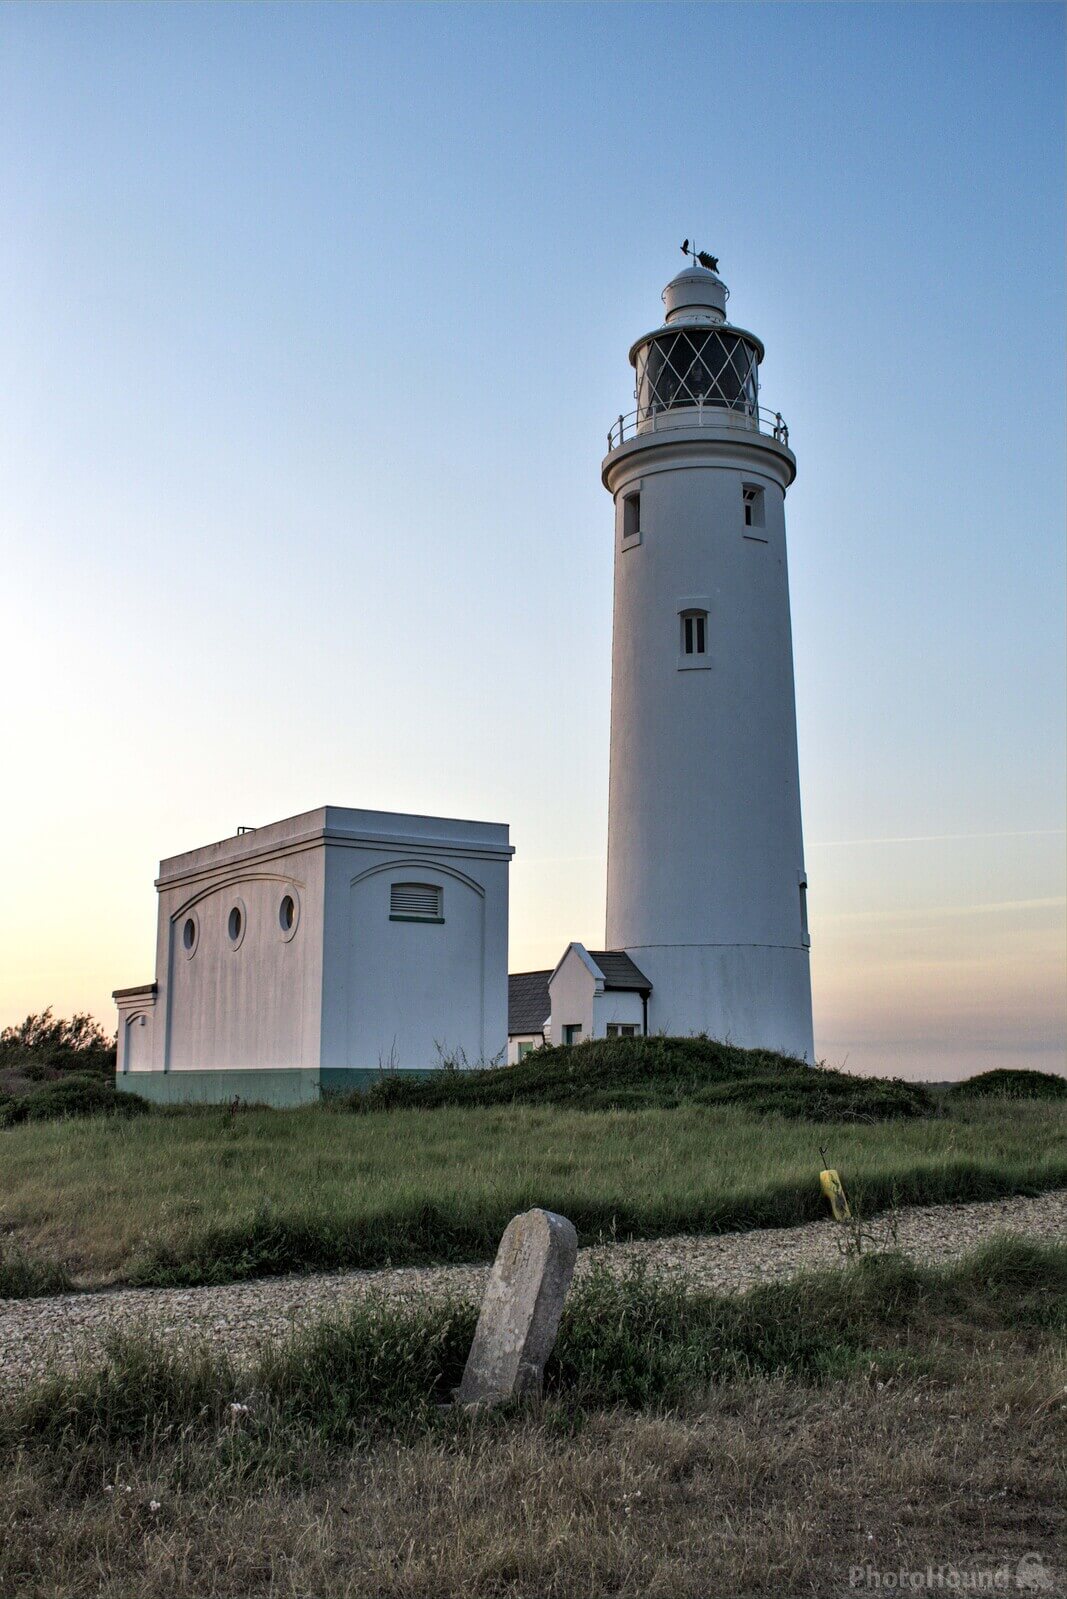 Image of Hurst Point Lighthouse by michael bennett